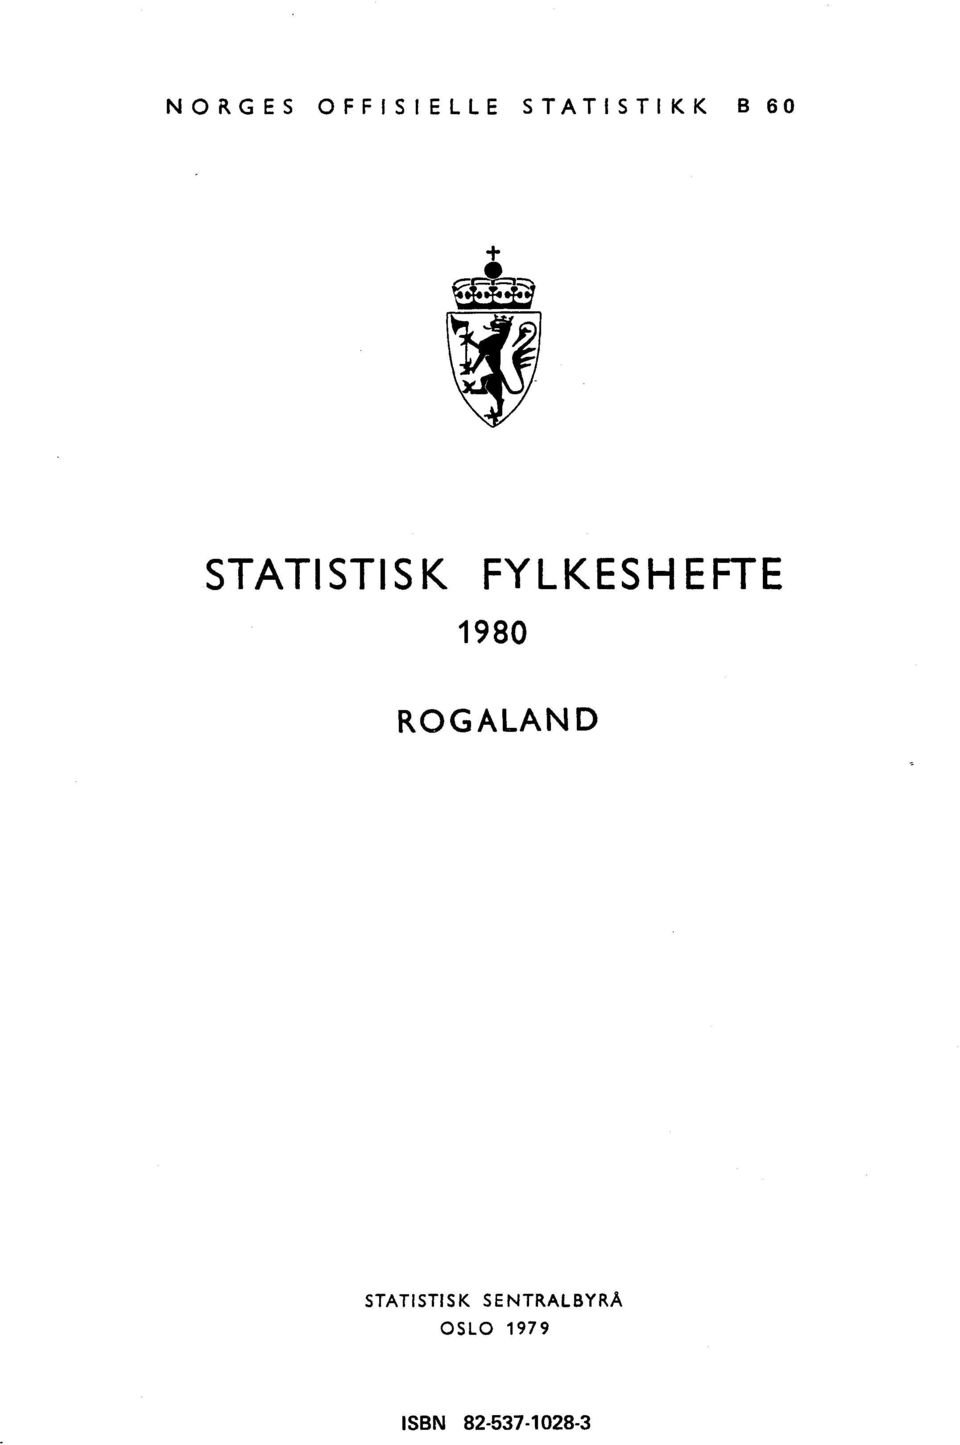 1980 ROGALAND STATISTISK